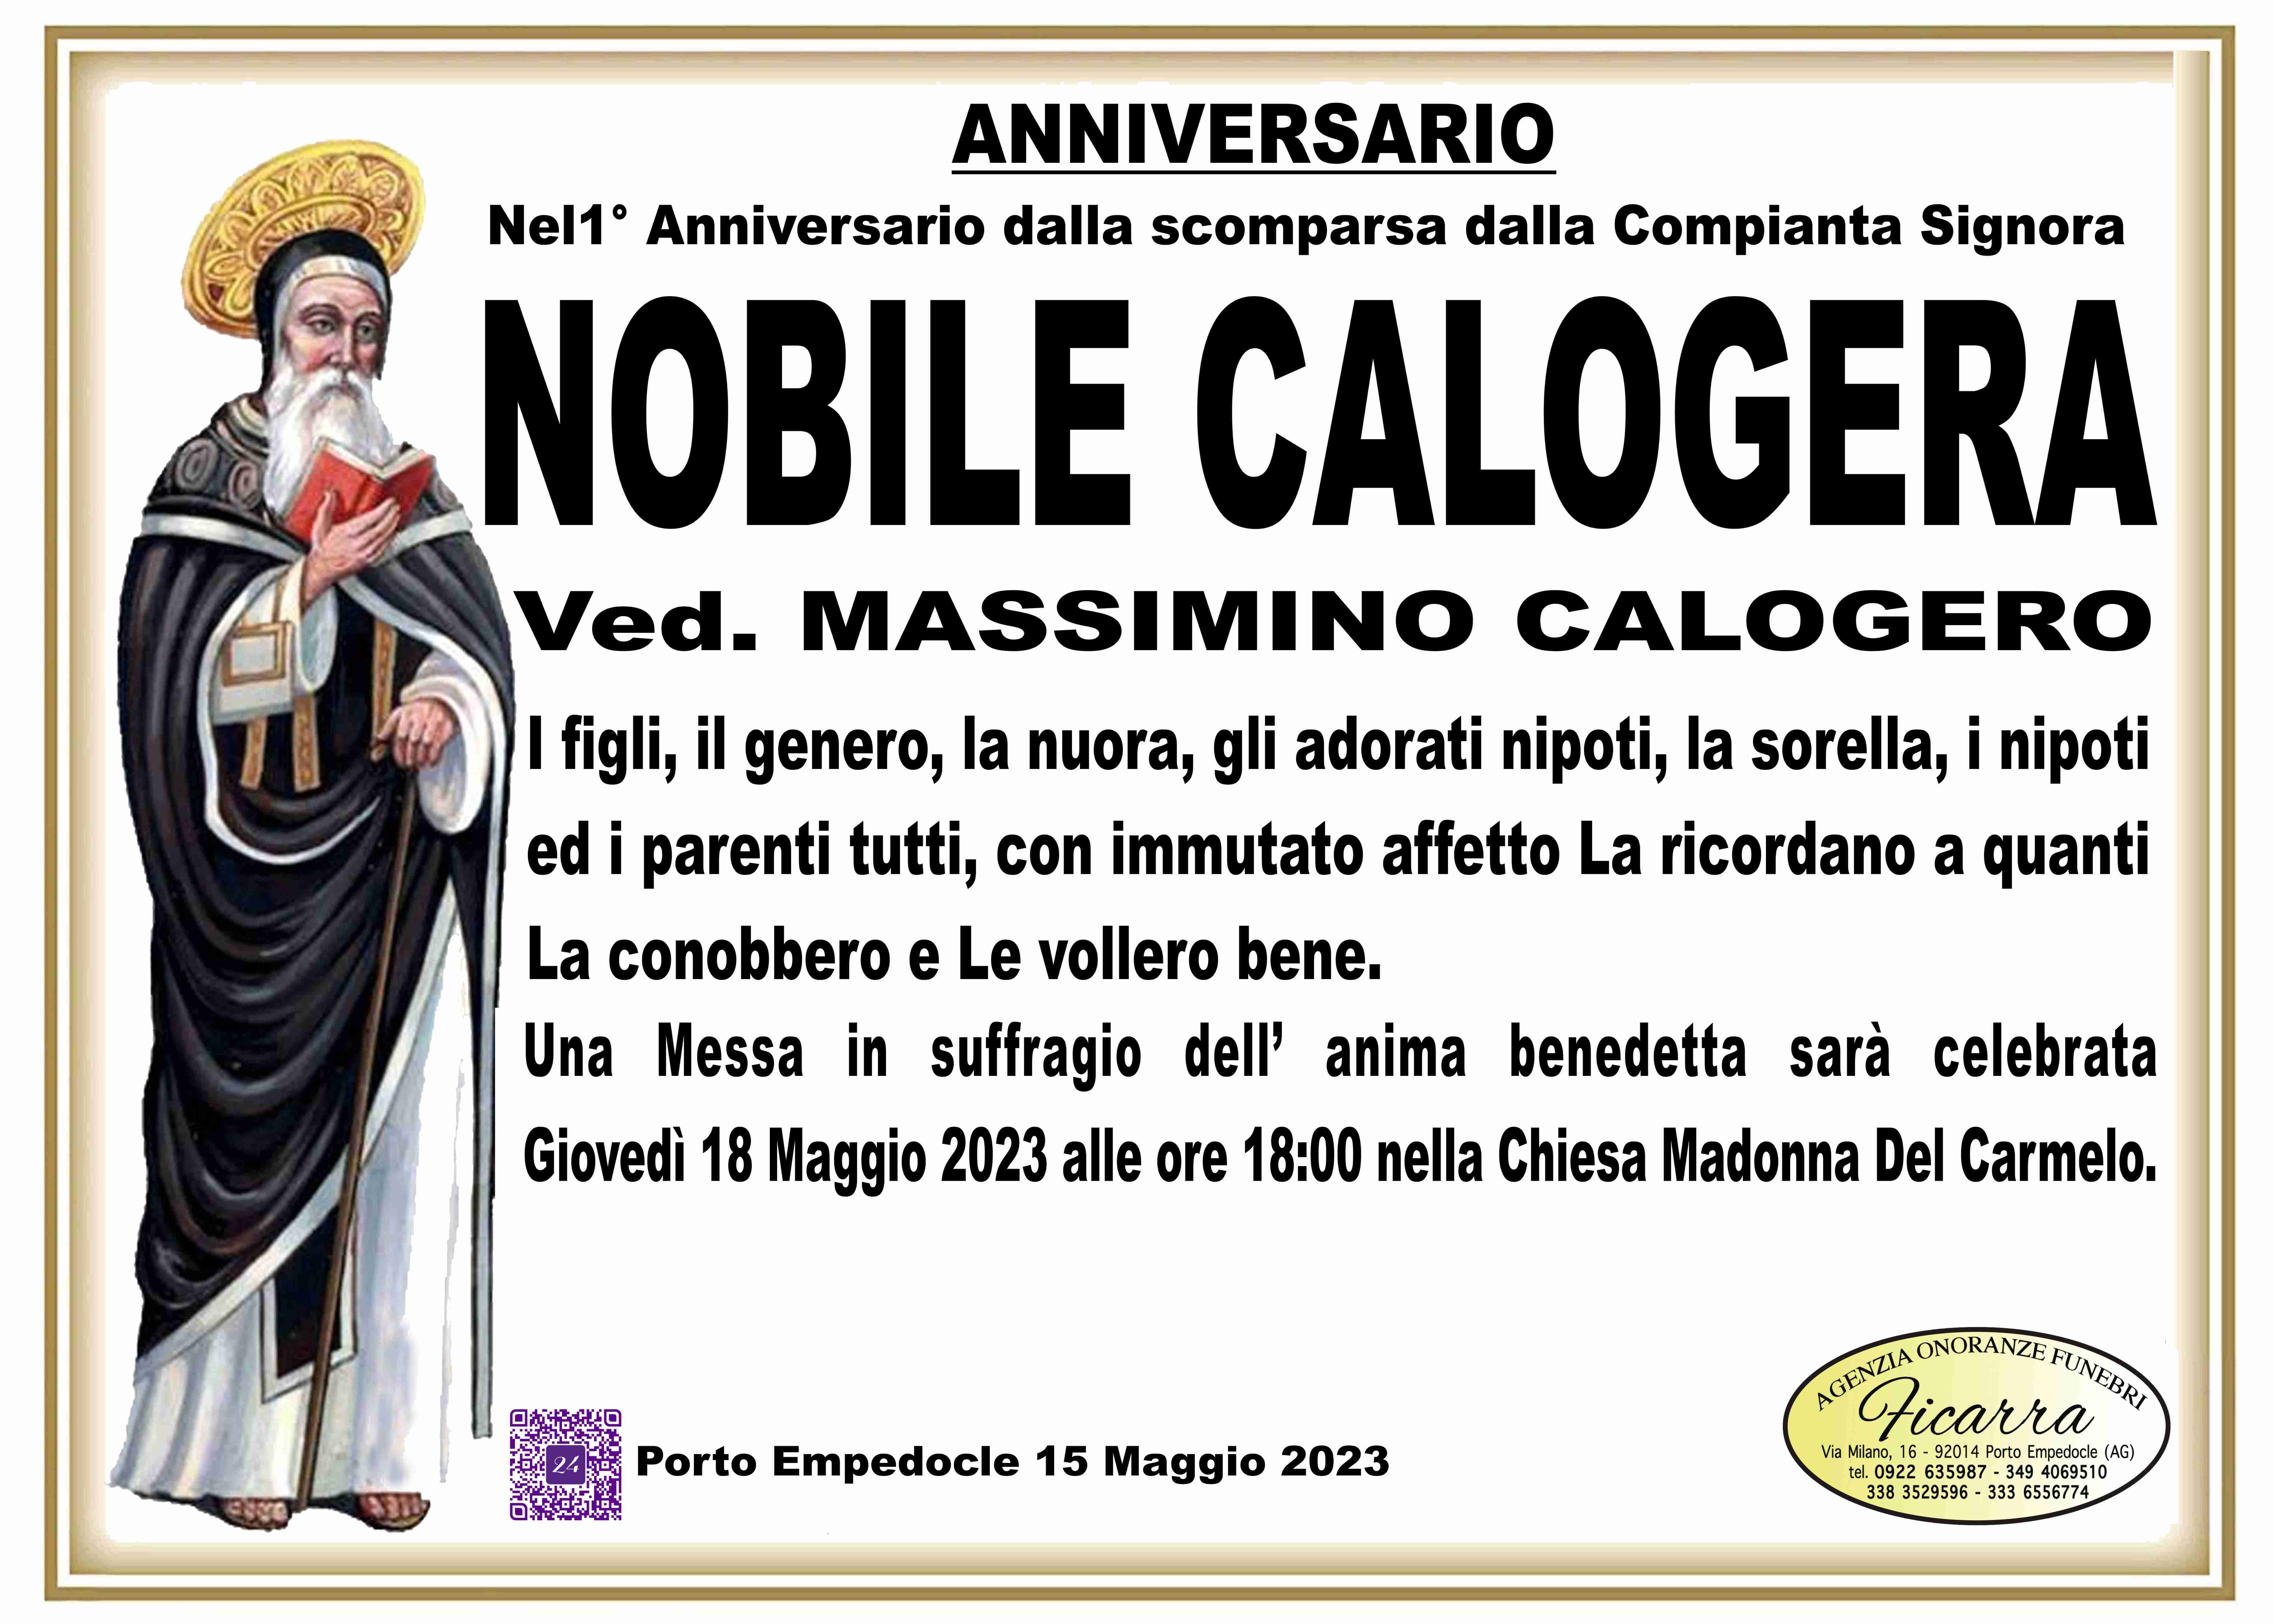 Calogera Nobile